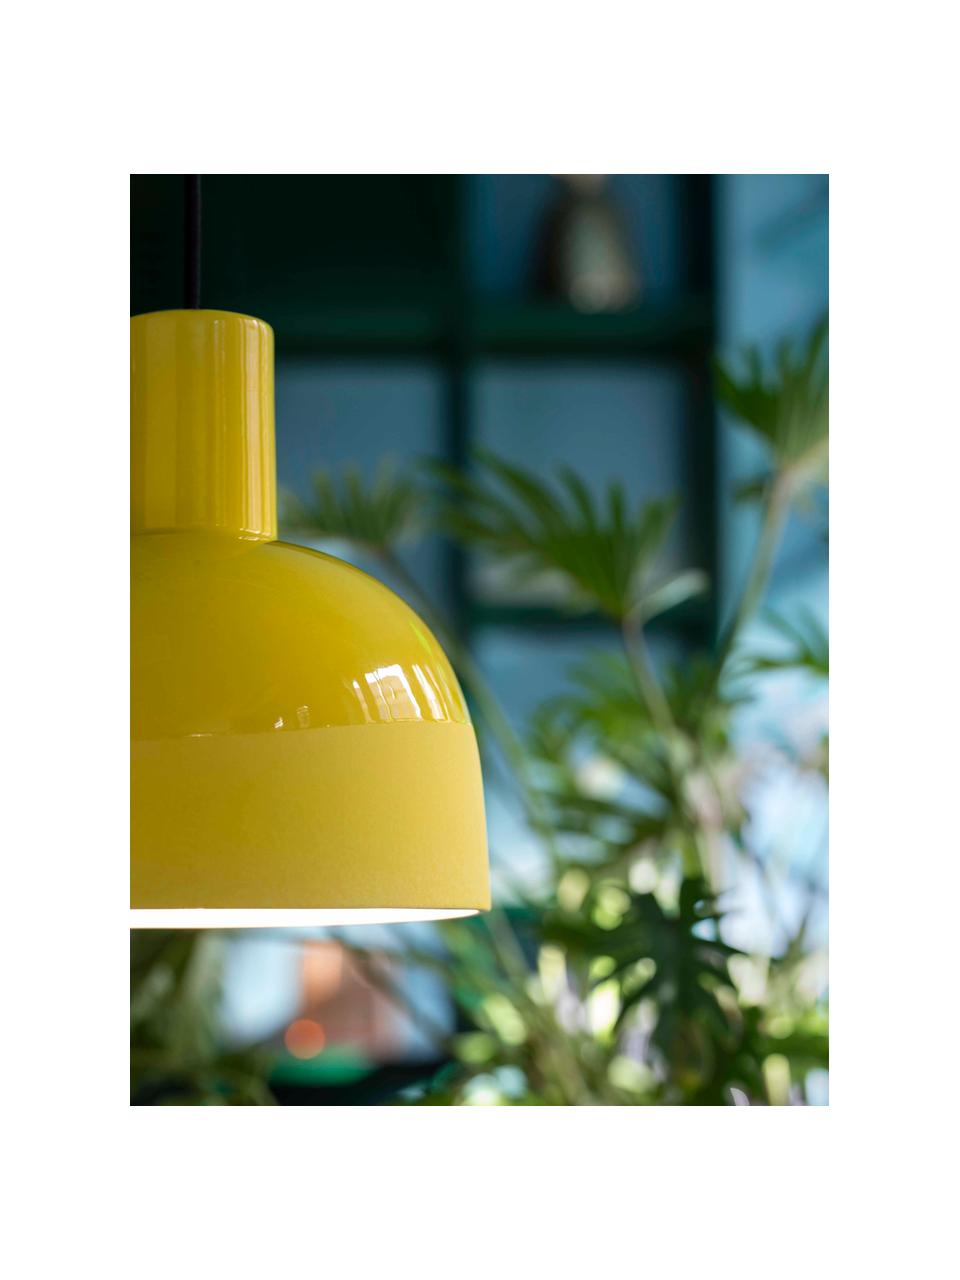 Kleine keramische hanglamp Caxixi in geel, Lampenkap: keramiek, Baldakijn: keramiek, Geel, Ø 22 x H 27 cm